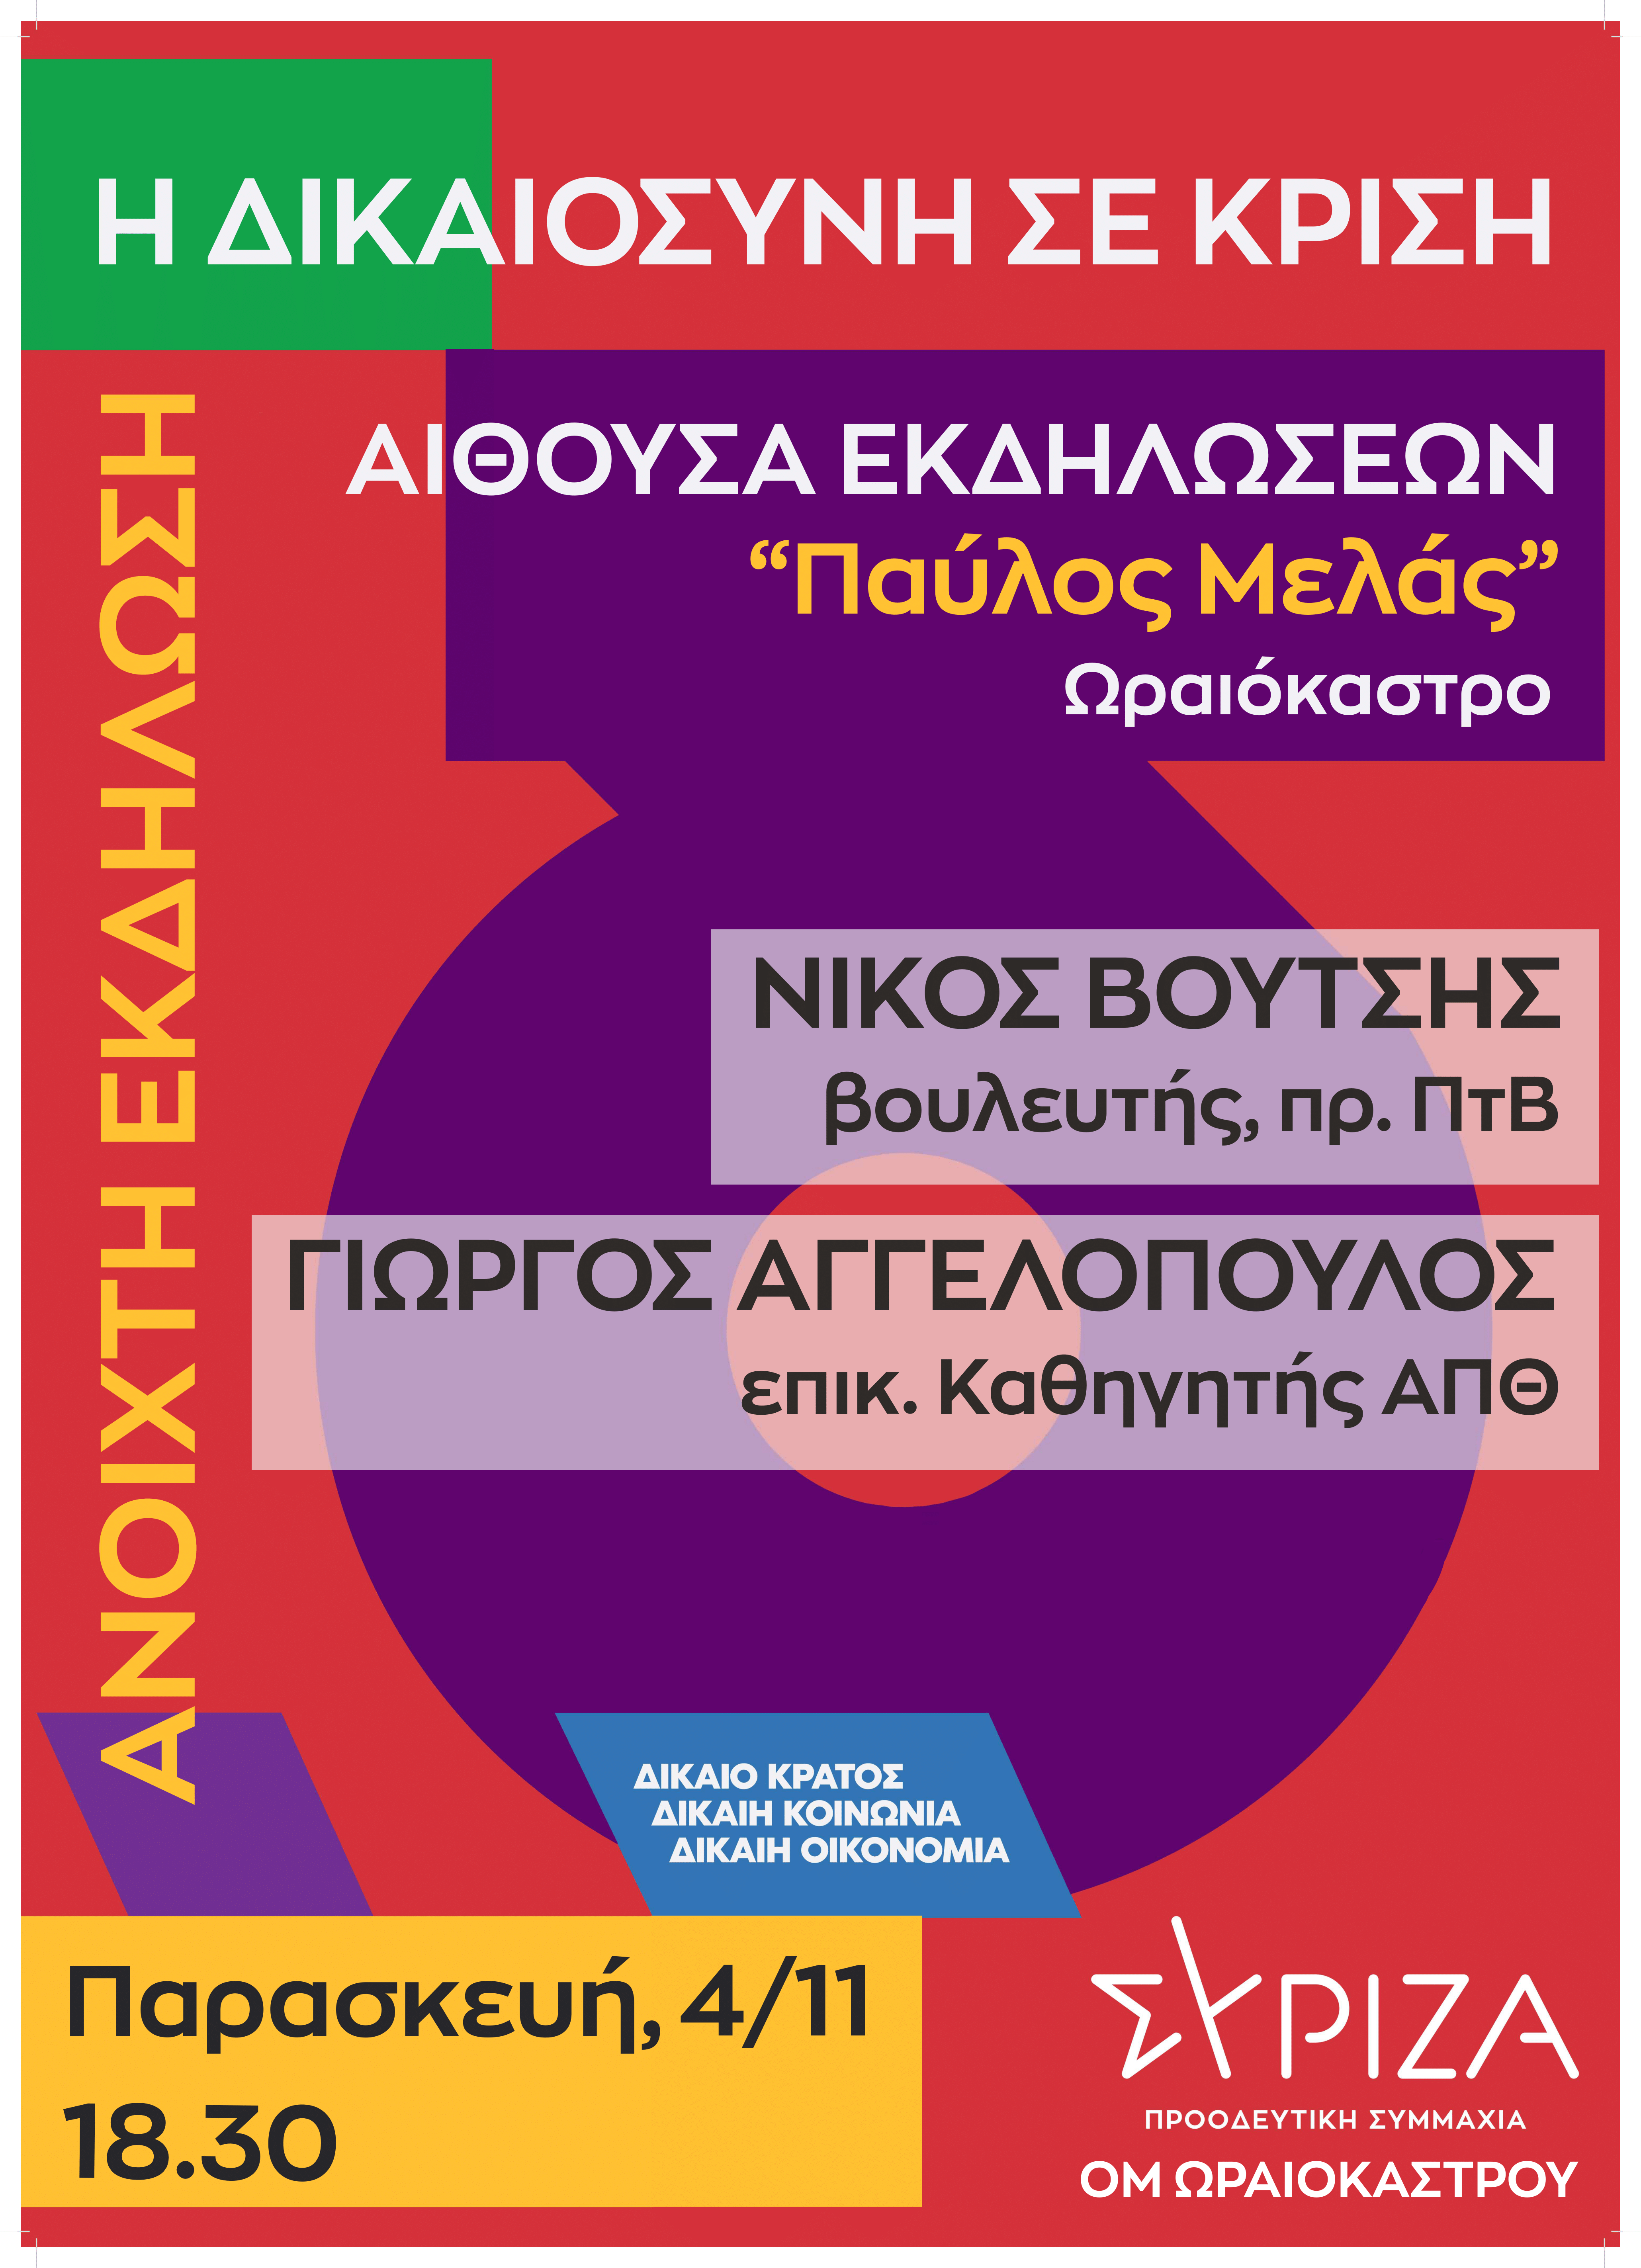 Ανοιχτή πολιτική εκδήλωση ΣΥΡΙΖΑ-Προοδευτική Συμμαχία Θεσσαλονίκης: Η Δικαιοσύνη σε κρίση